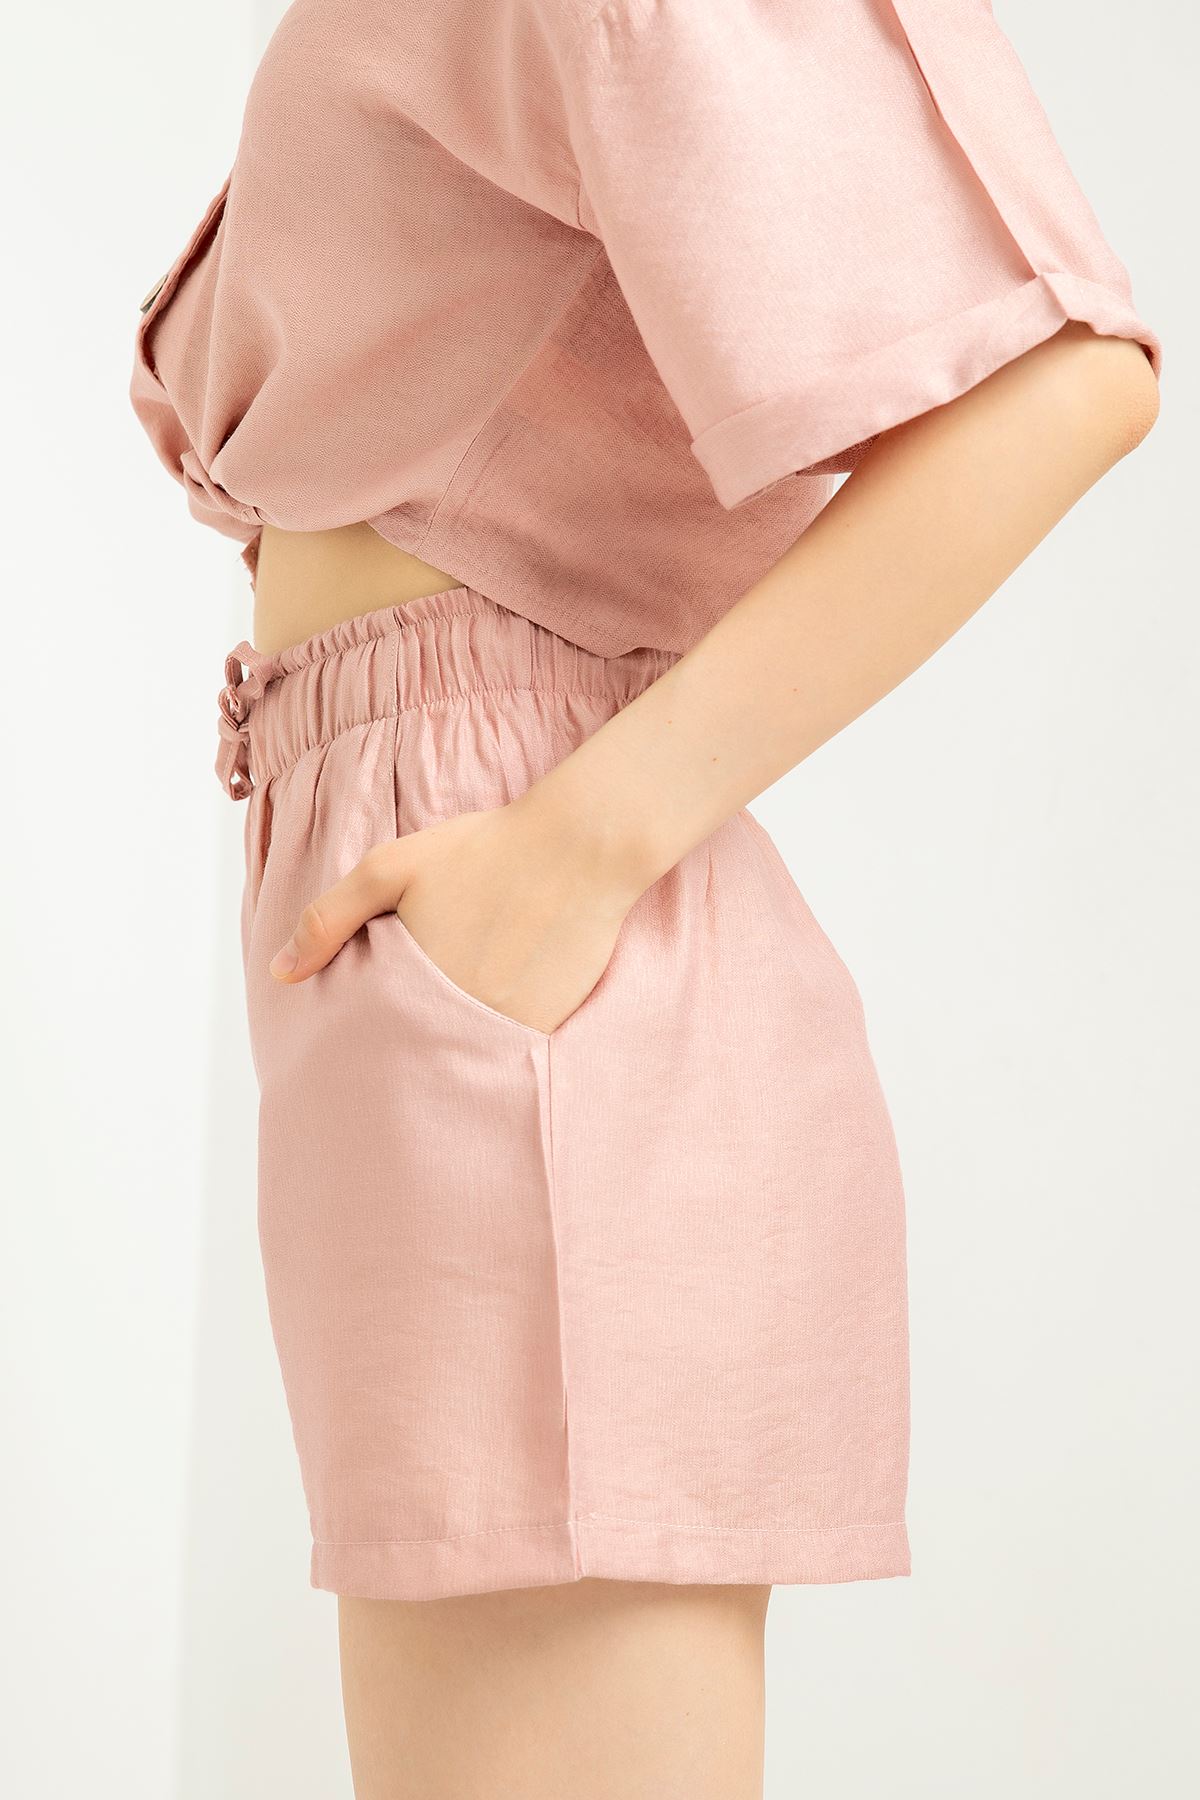 Linen Fabric Short Comfy Fit Elastic Waist Women Shorts - Light Pink